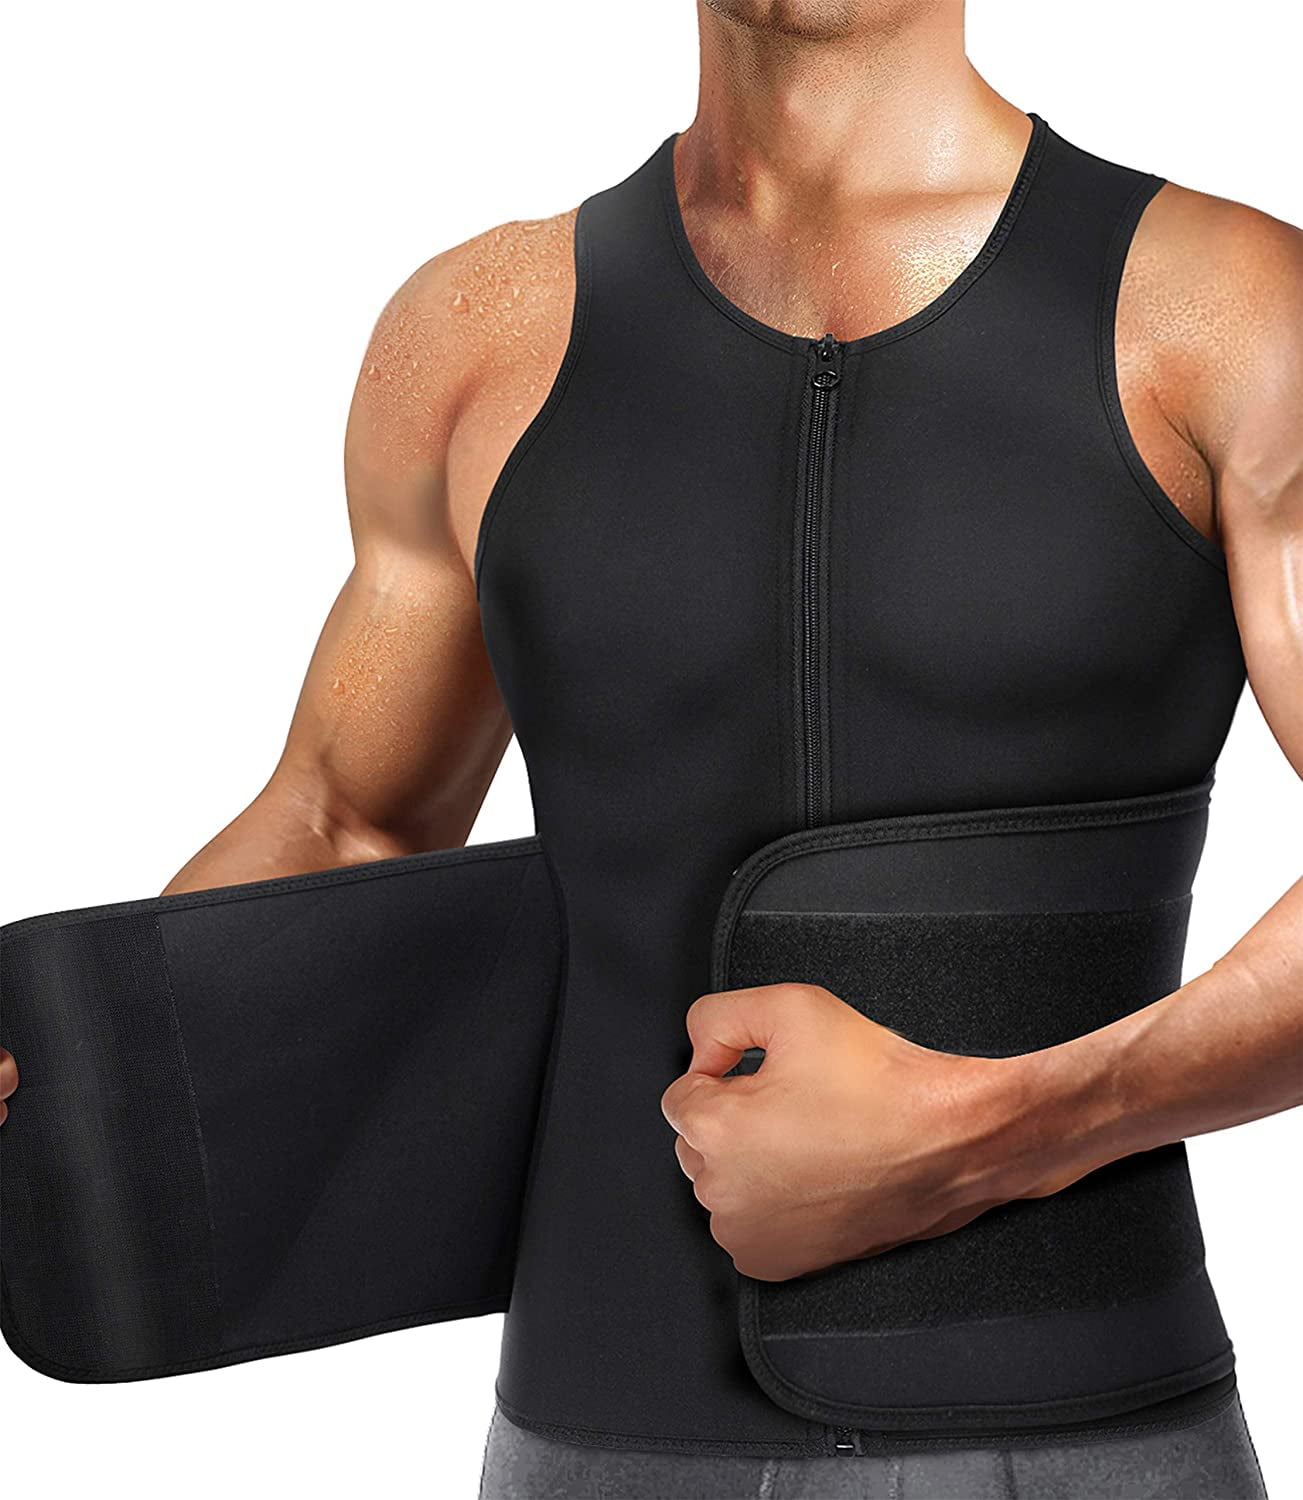 US Men's Weight Loss Workout Neoprene Body Shaper Sweat Sauna Suit Exercise Vest 